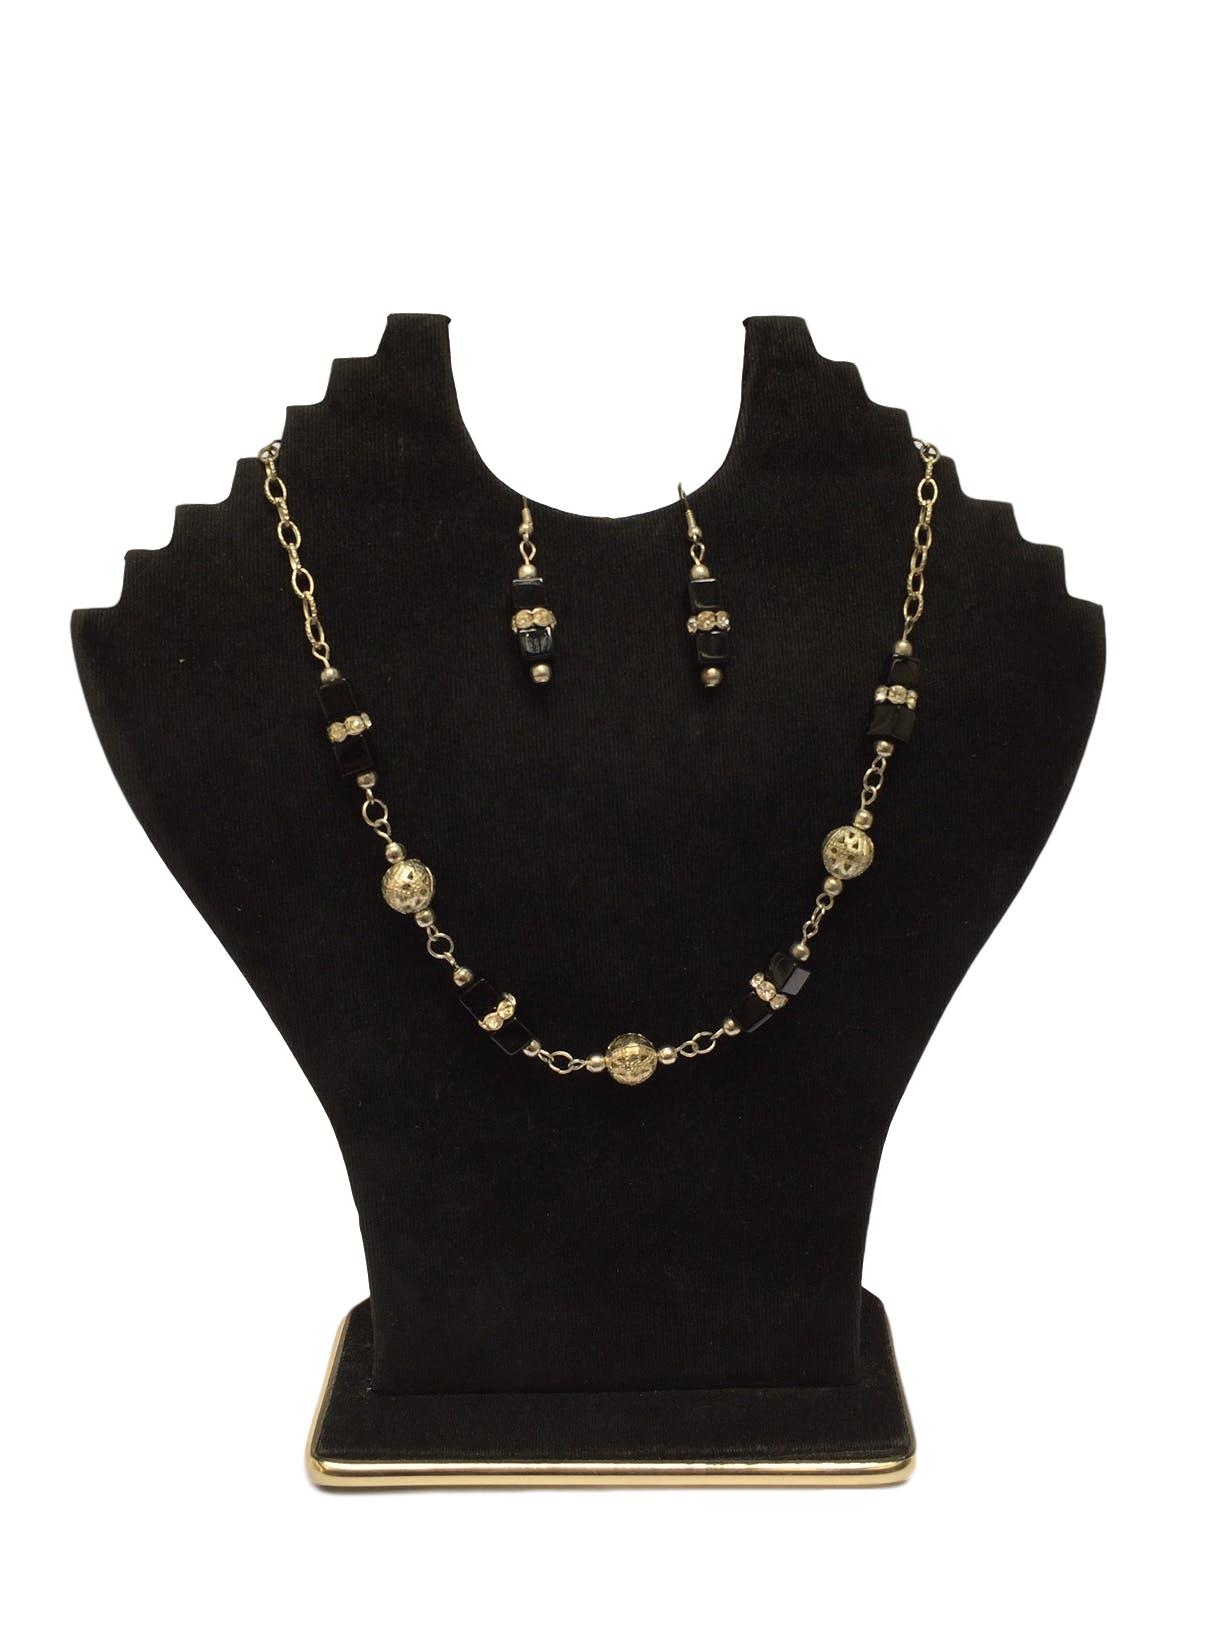 Collar de bolitas plateadas forradas en estilo filigrana con  piedras cúbicas negras y strass
Circunferencia: 44 cm 